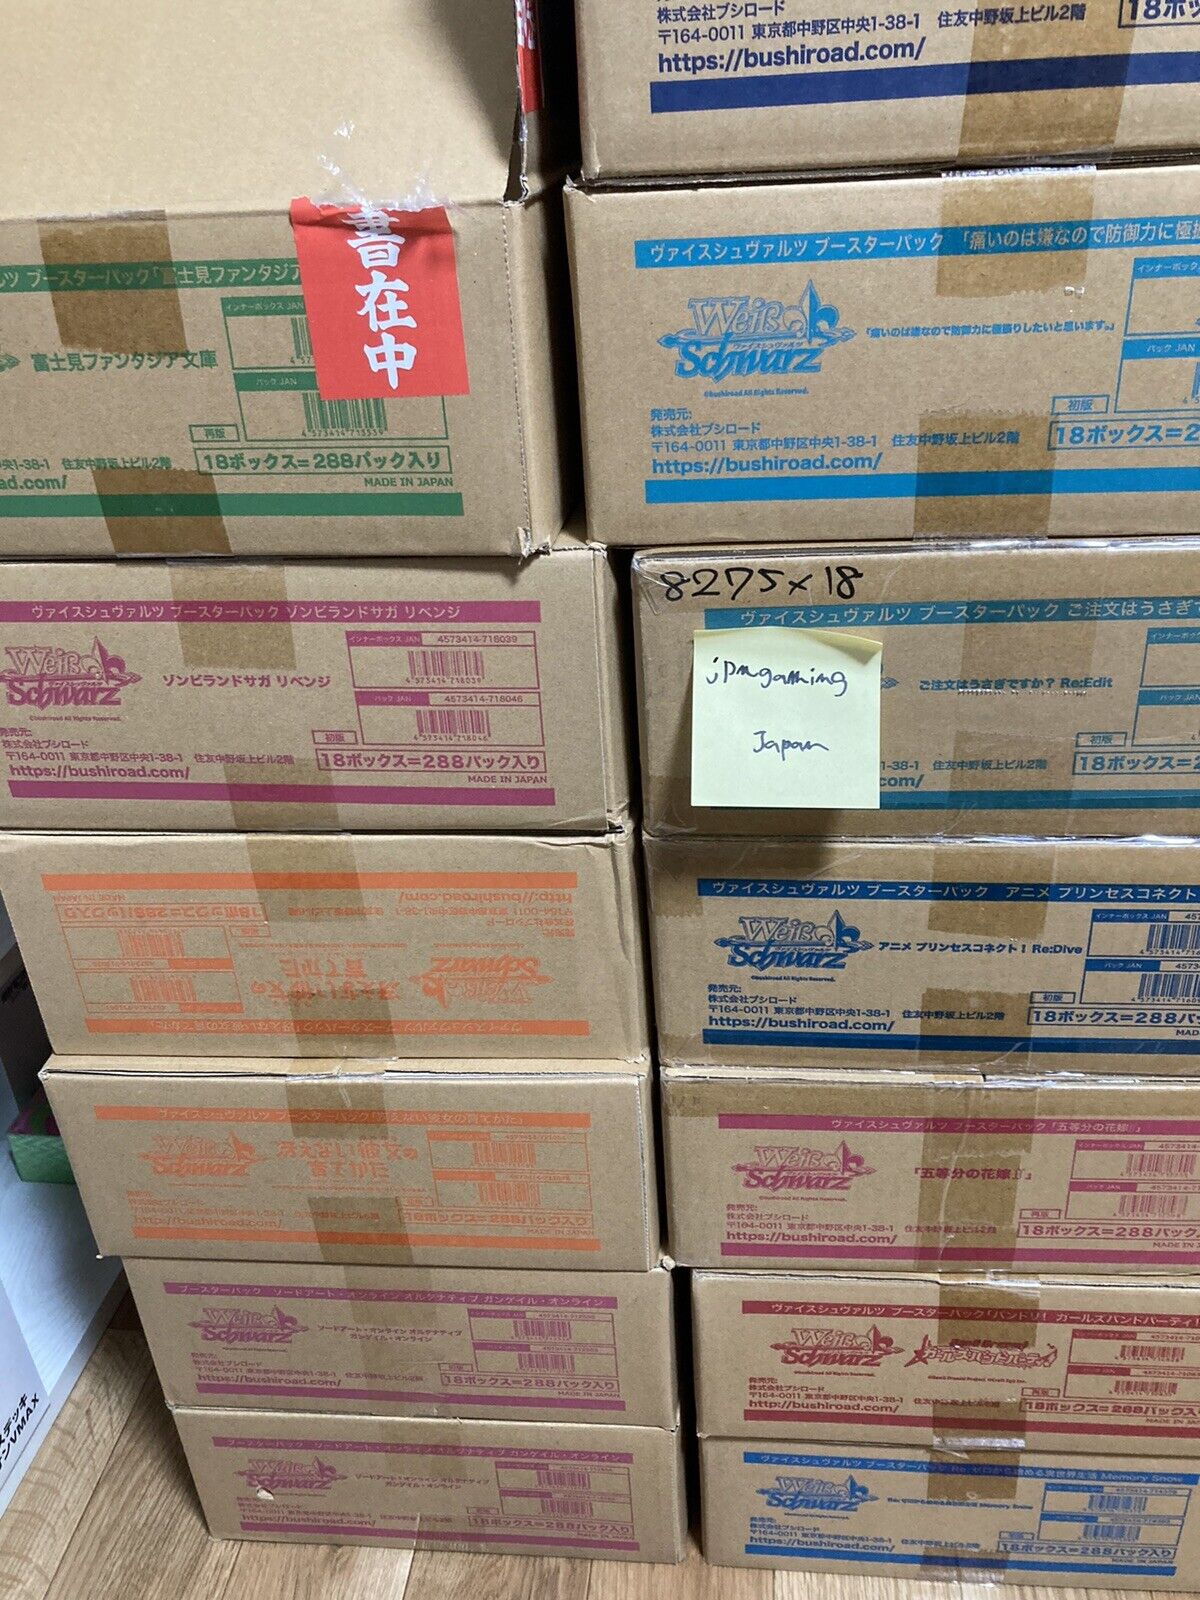 10 x Weiss Schwarz Japanese Star Wars Premium Booster Box FedEx IP Free Shipping